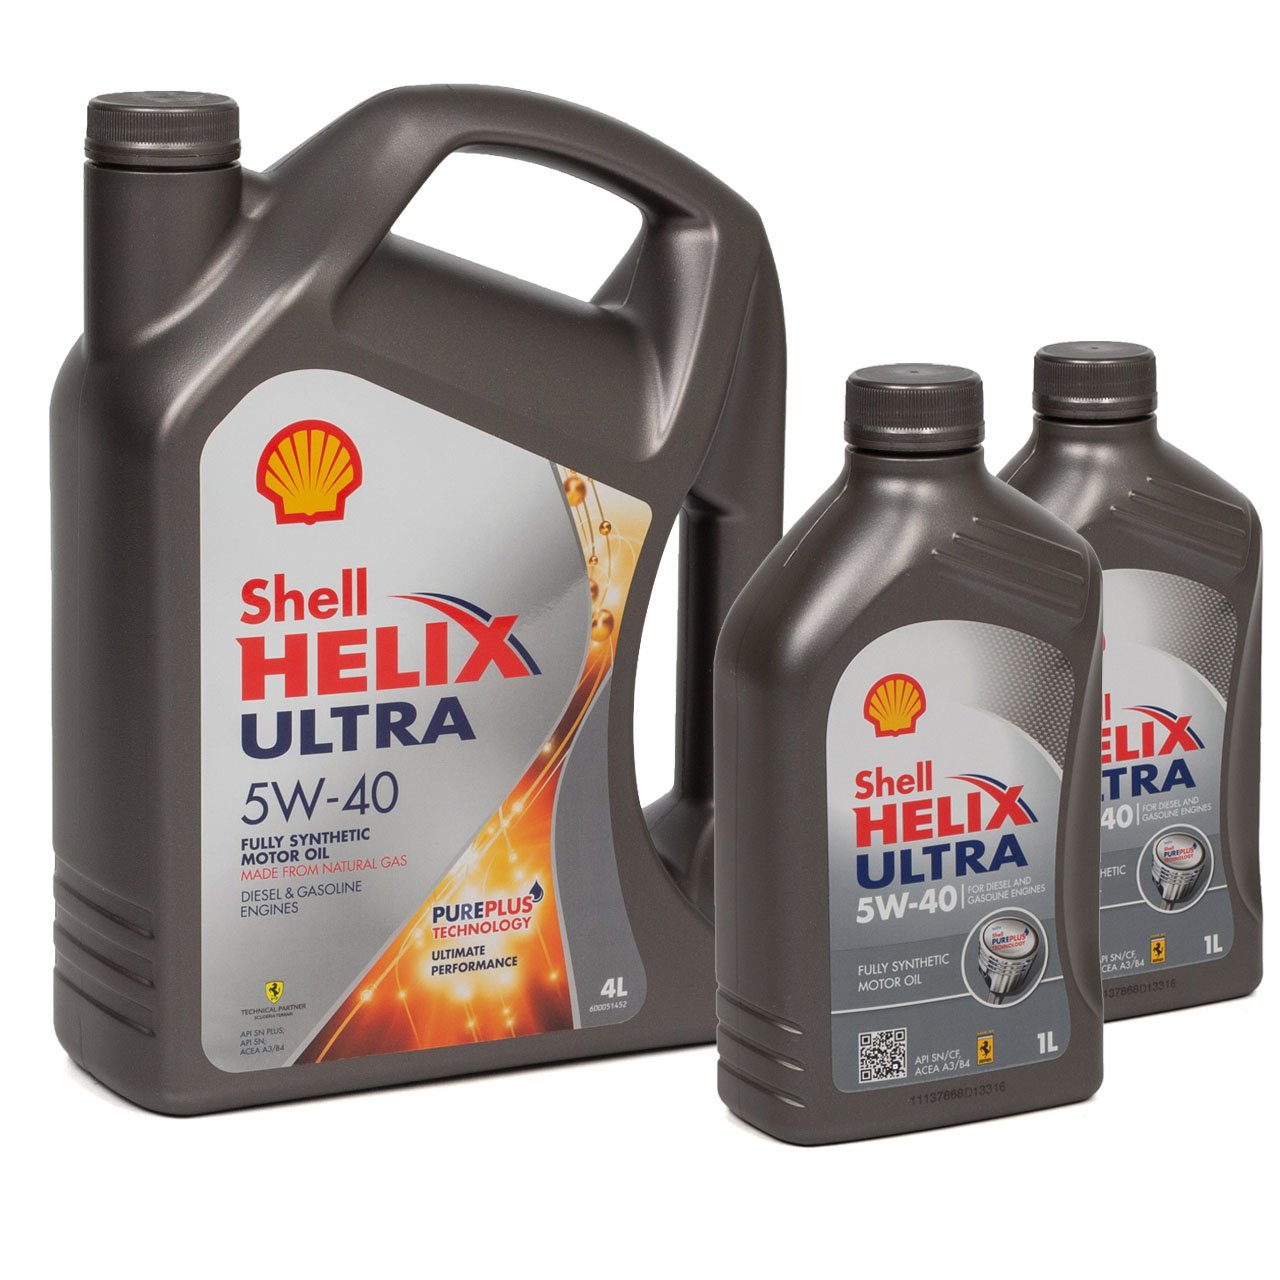 6L 6 Liter SHELL HELIX ULTRA 5W-40 5W40 Motoröl Öl MB 226/229.5 VW 502/505.00